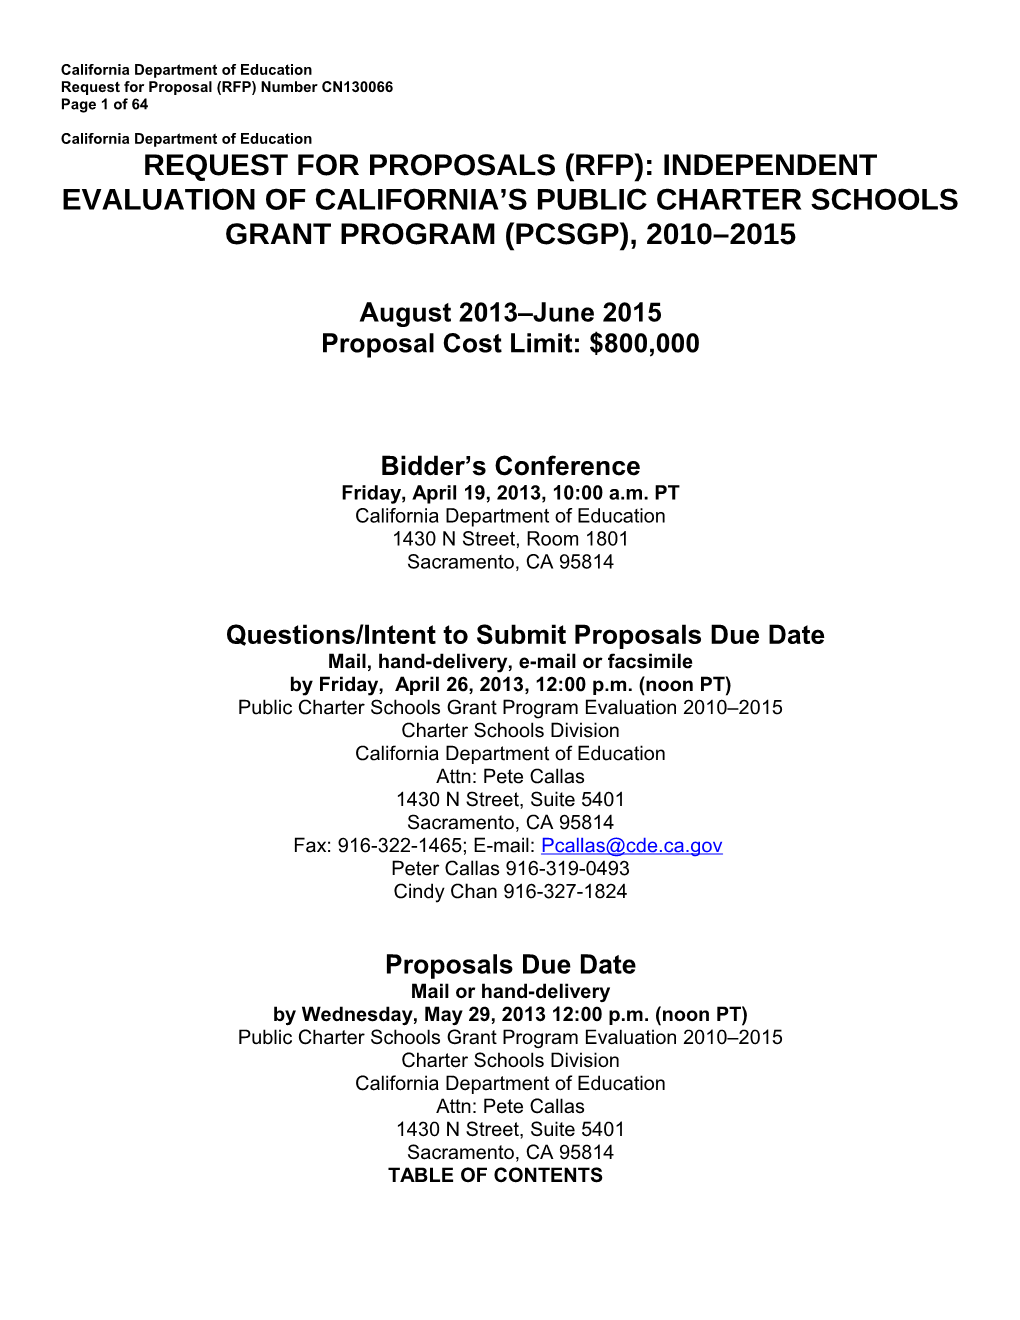 RFP-13: Public Charter Schools Grant Program (CA Dept of Education)